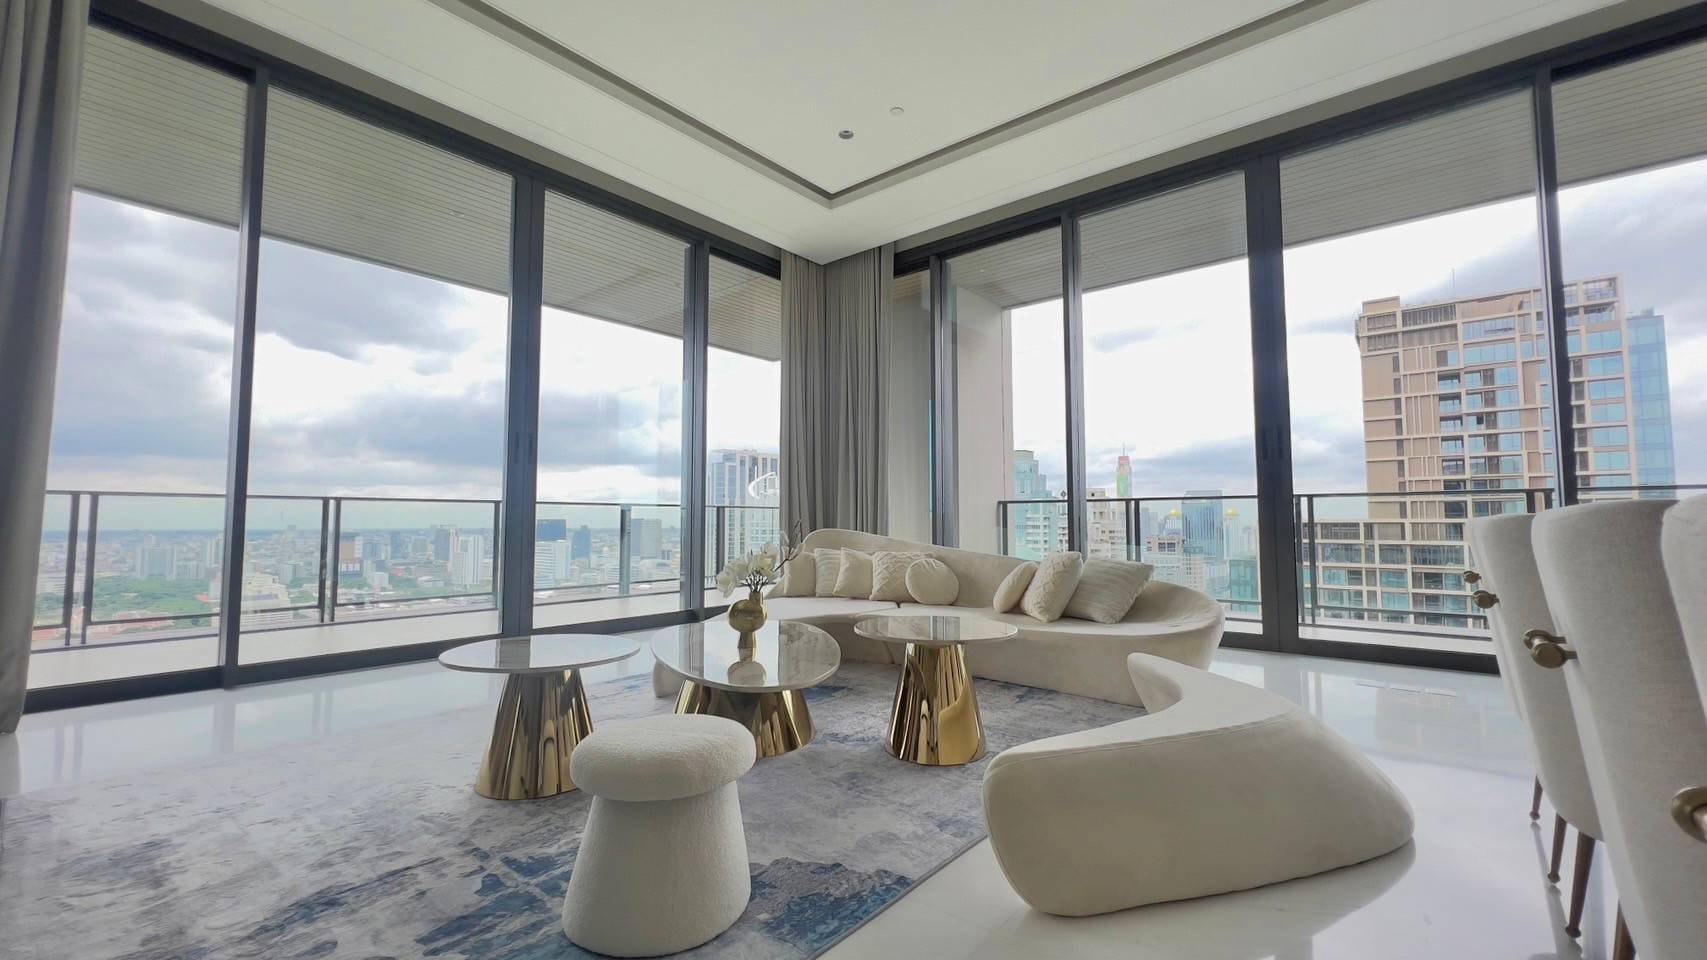 Luxurious 4 Bedroom Condo, The Residences at Sindhorn Kempinski, Bangkok, Thailand.